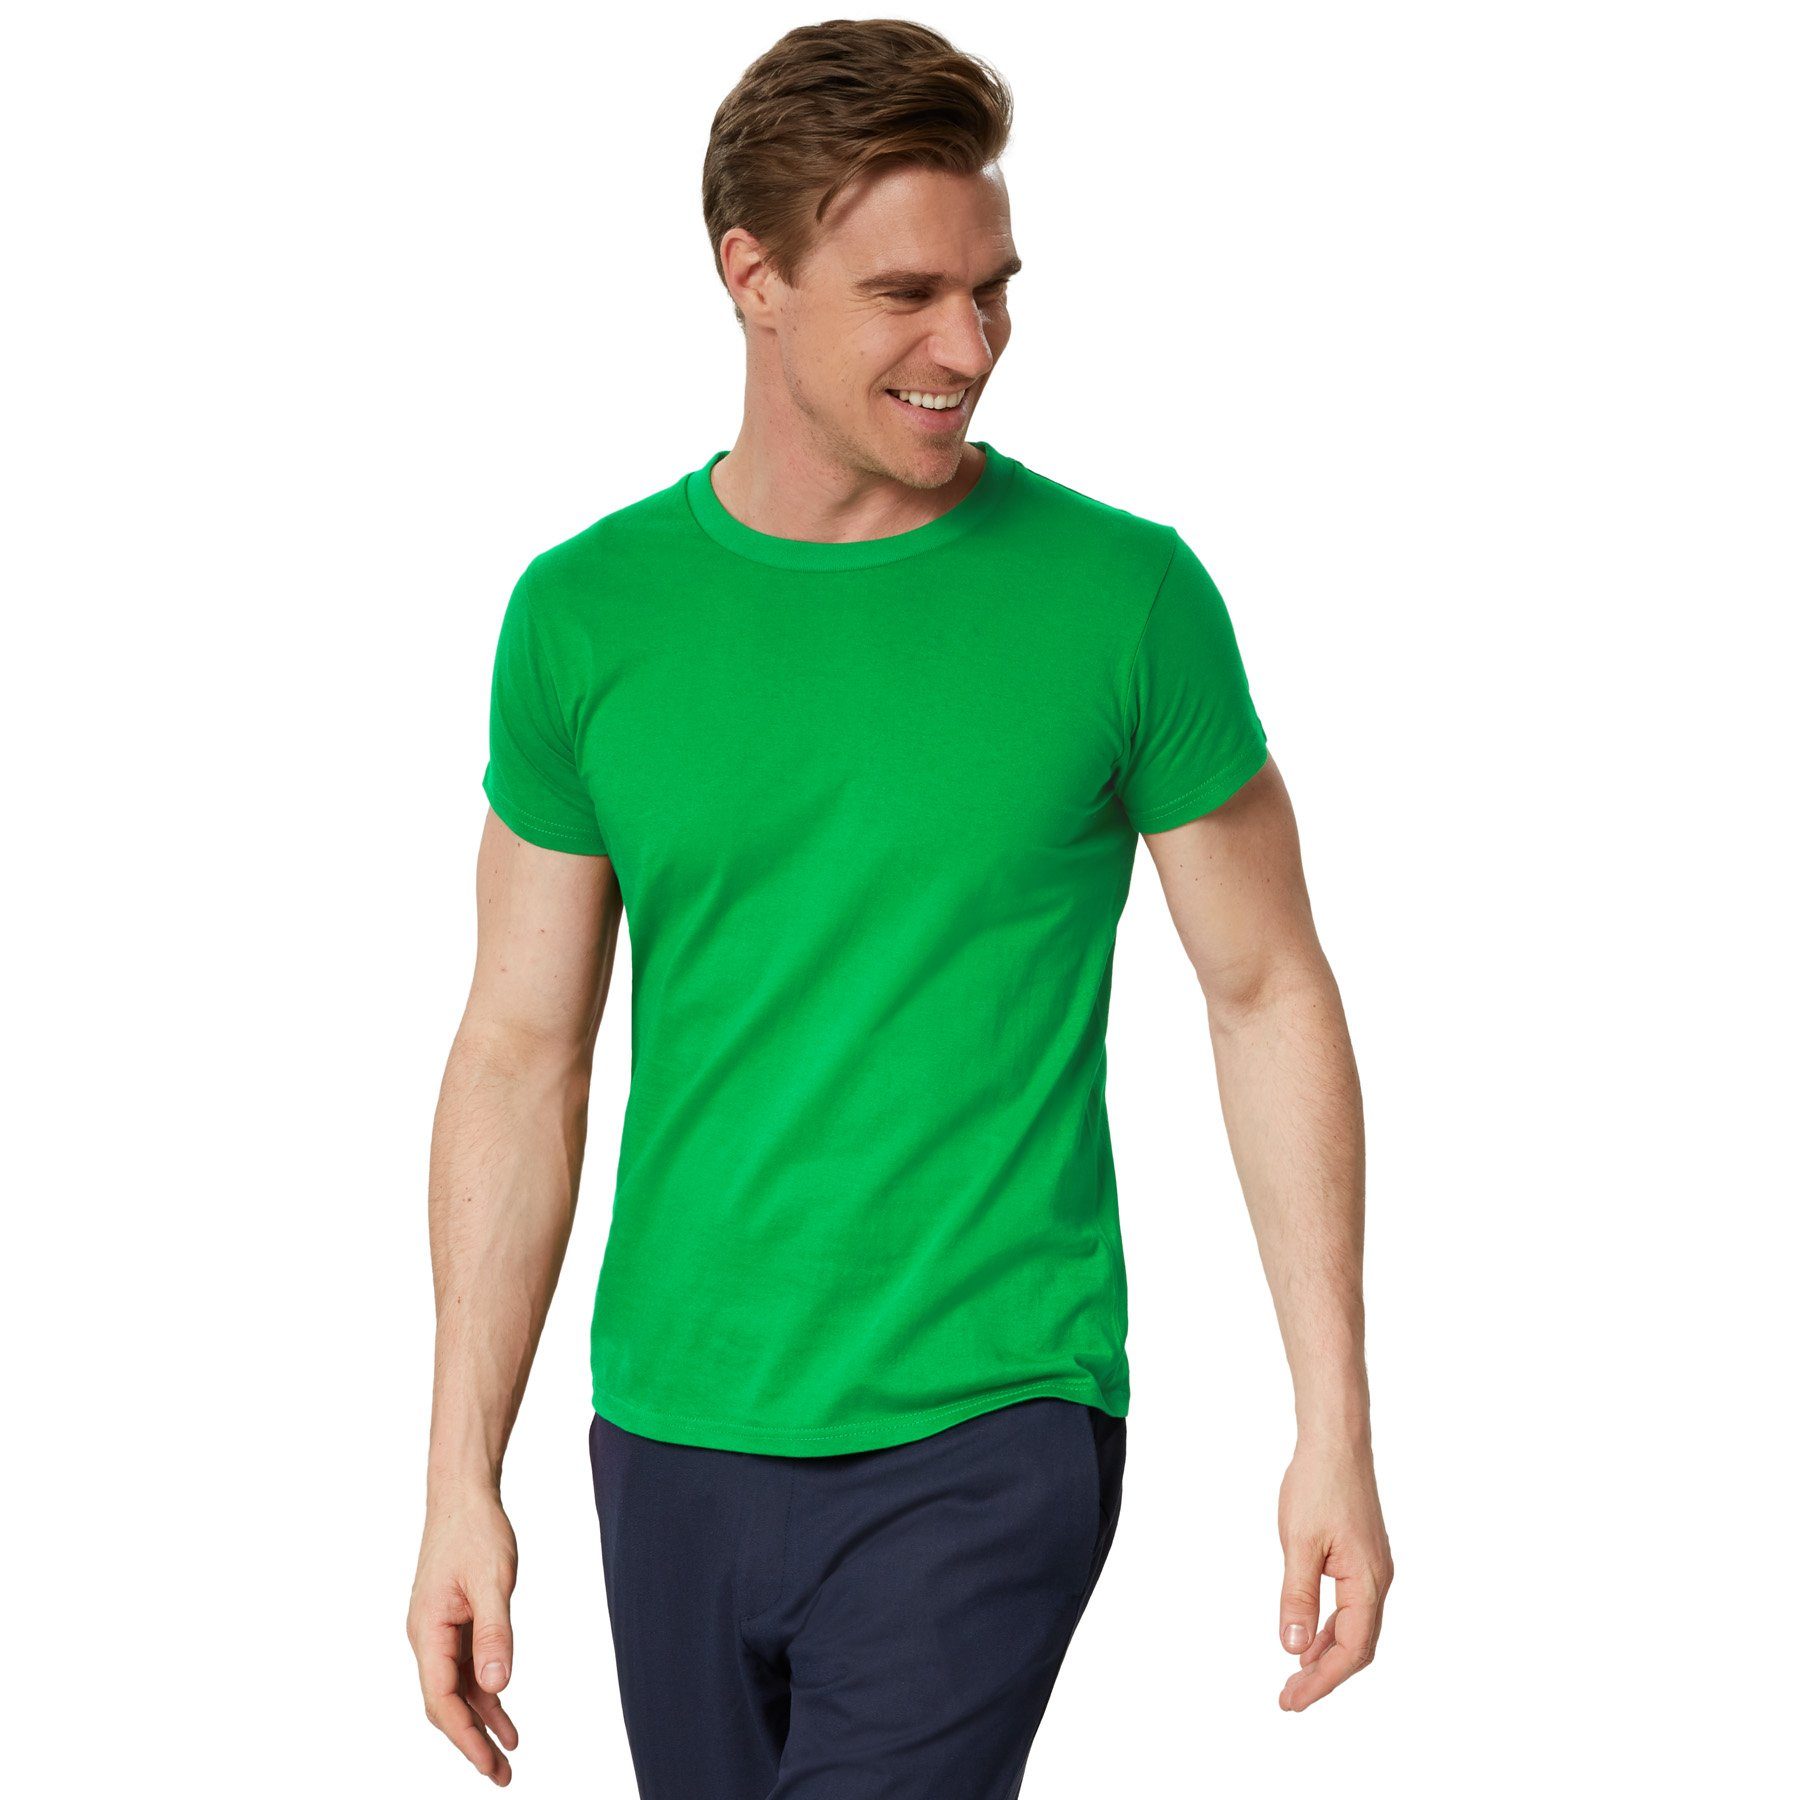 Männer dressforfun T-Shirt T-Shirt grün Rundhals